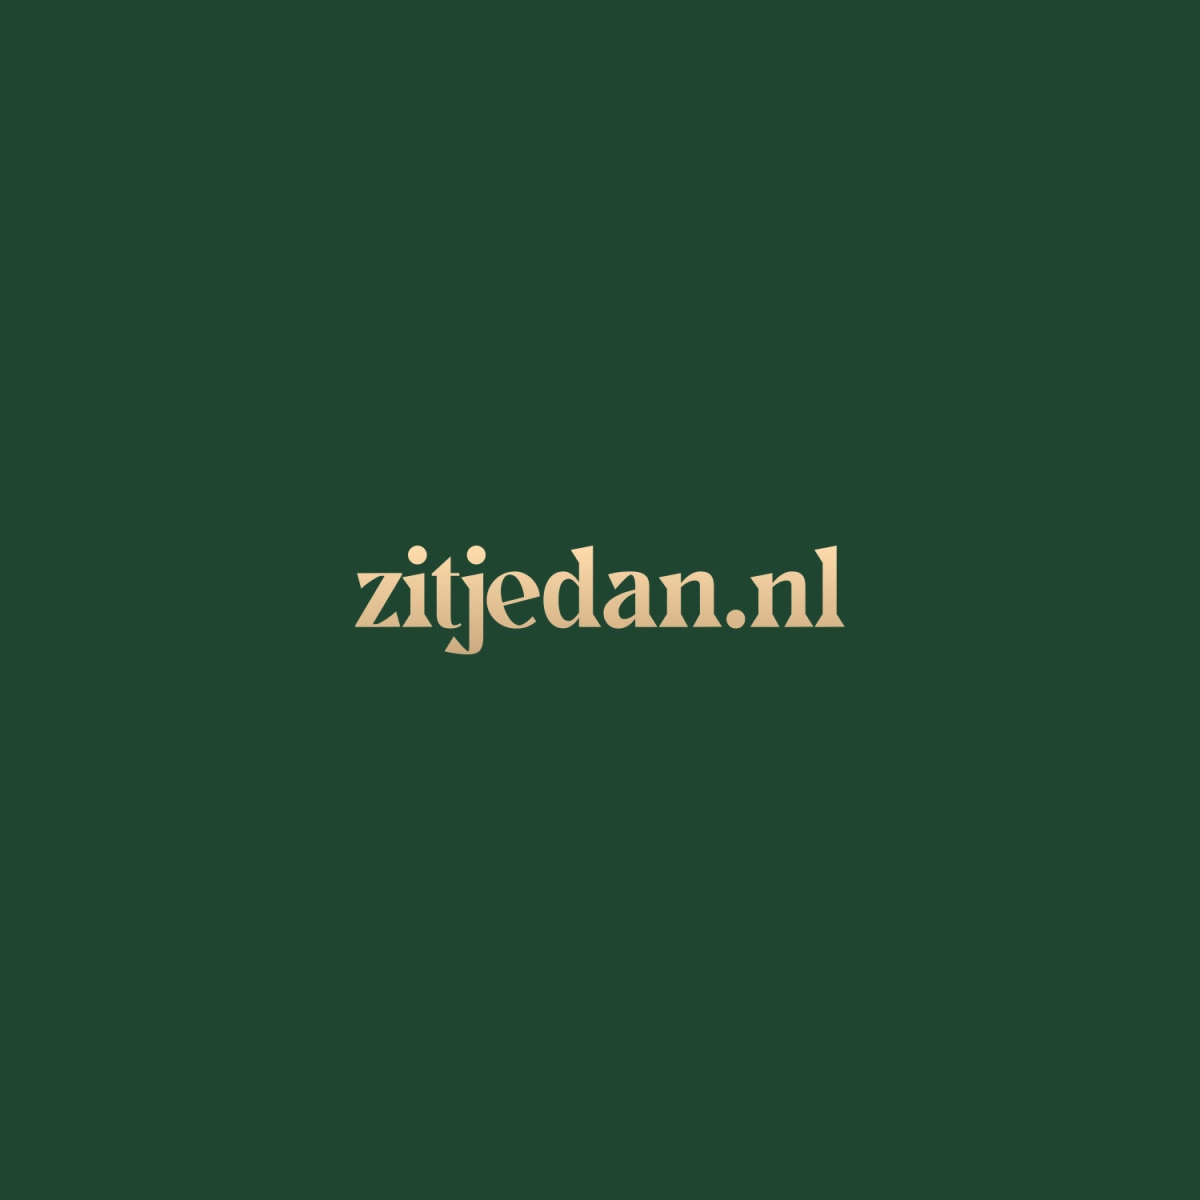 Zitjedan.nls achtergrond